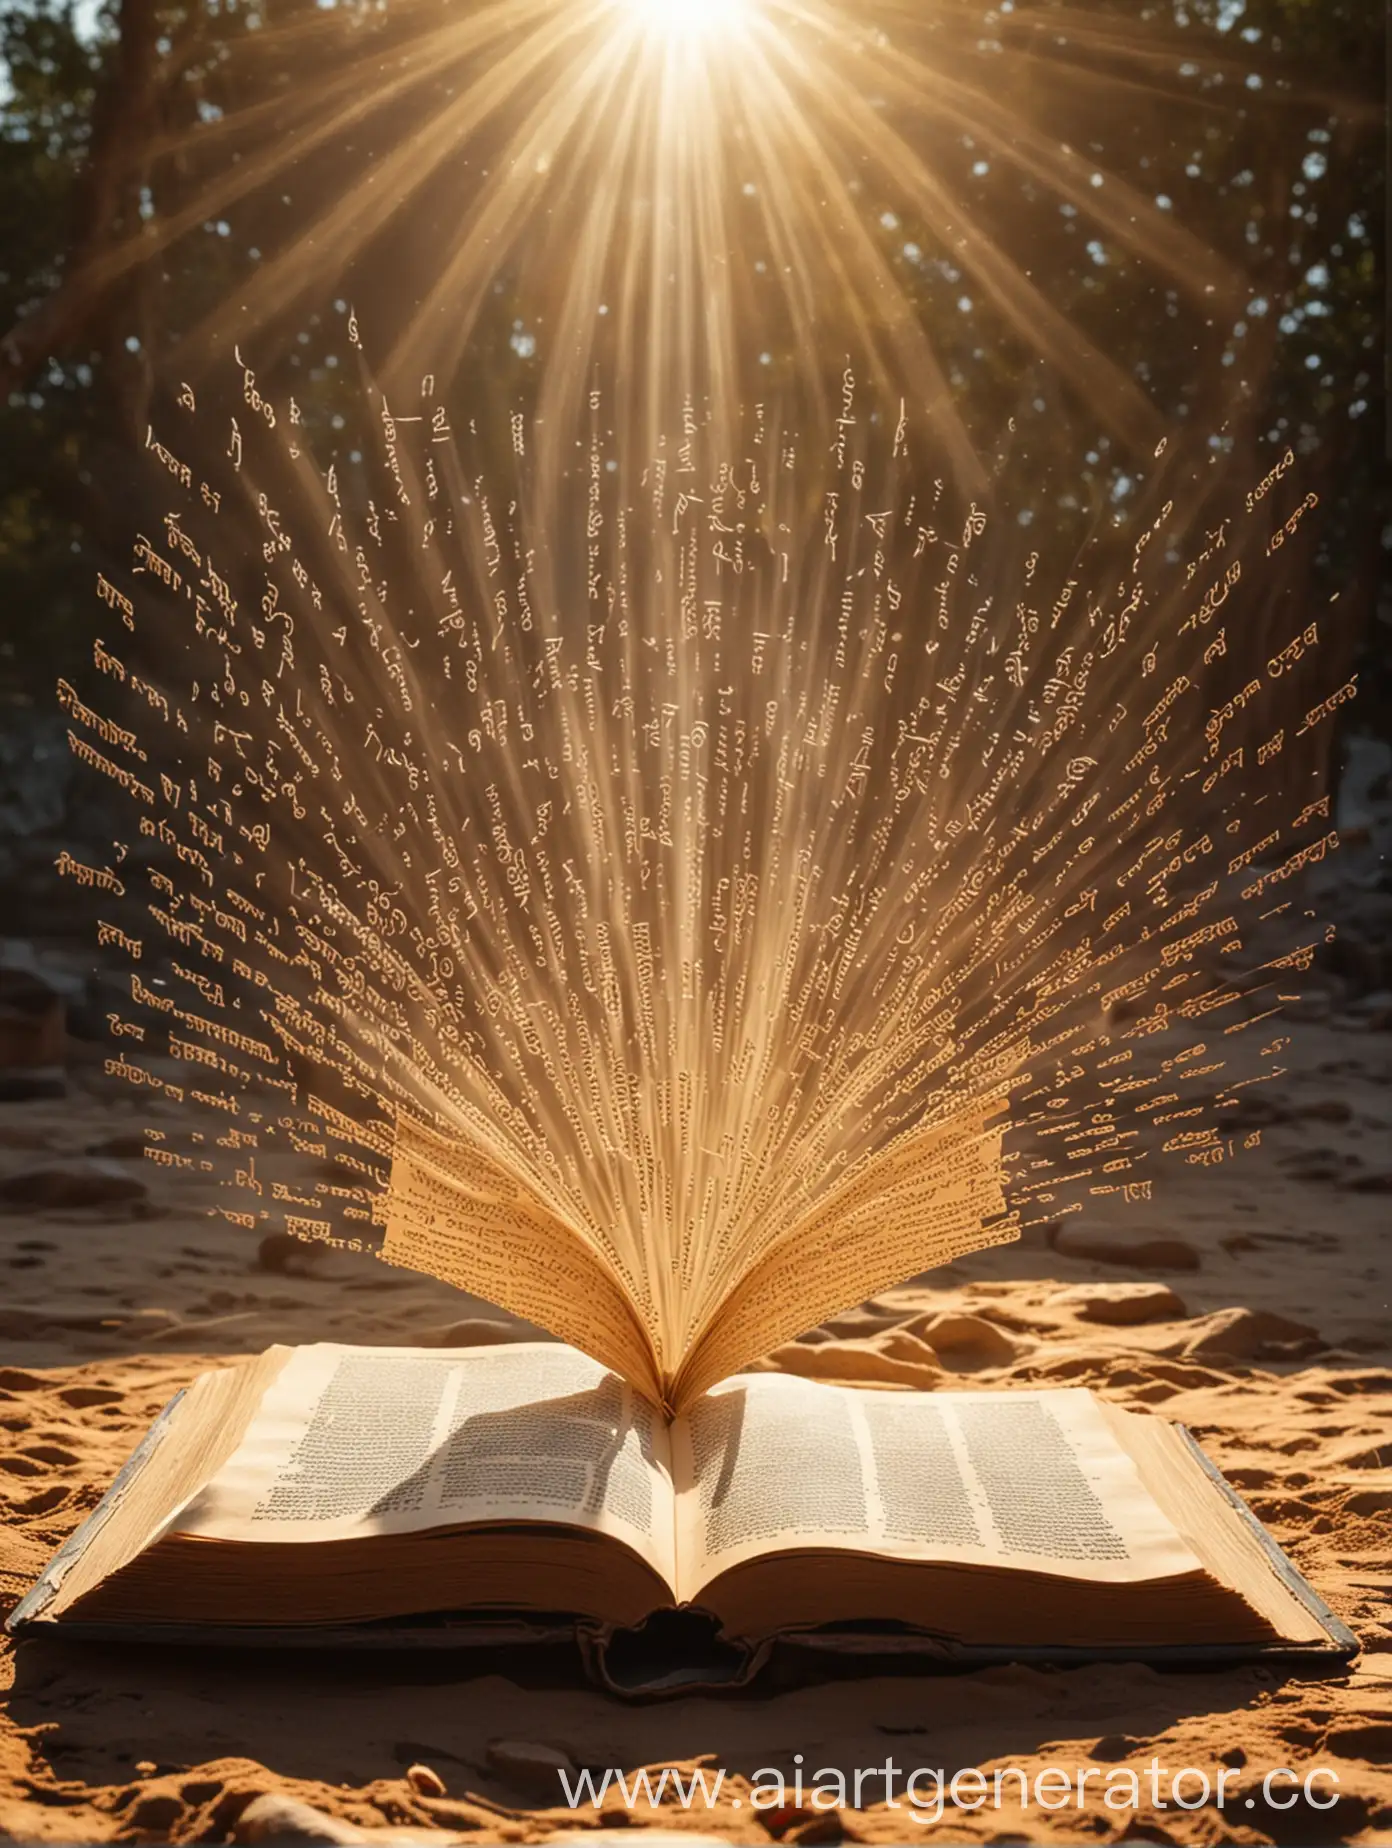 Раскрытая книга под лучами солнца из который вылетают буквы санскрита